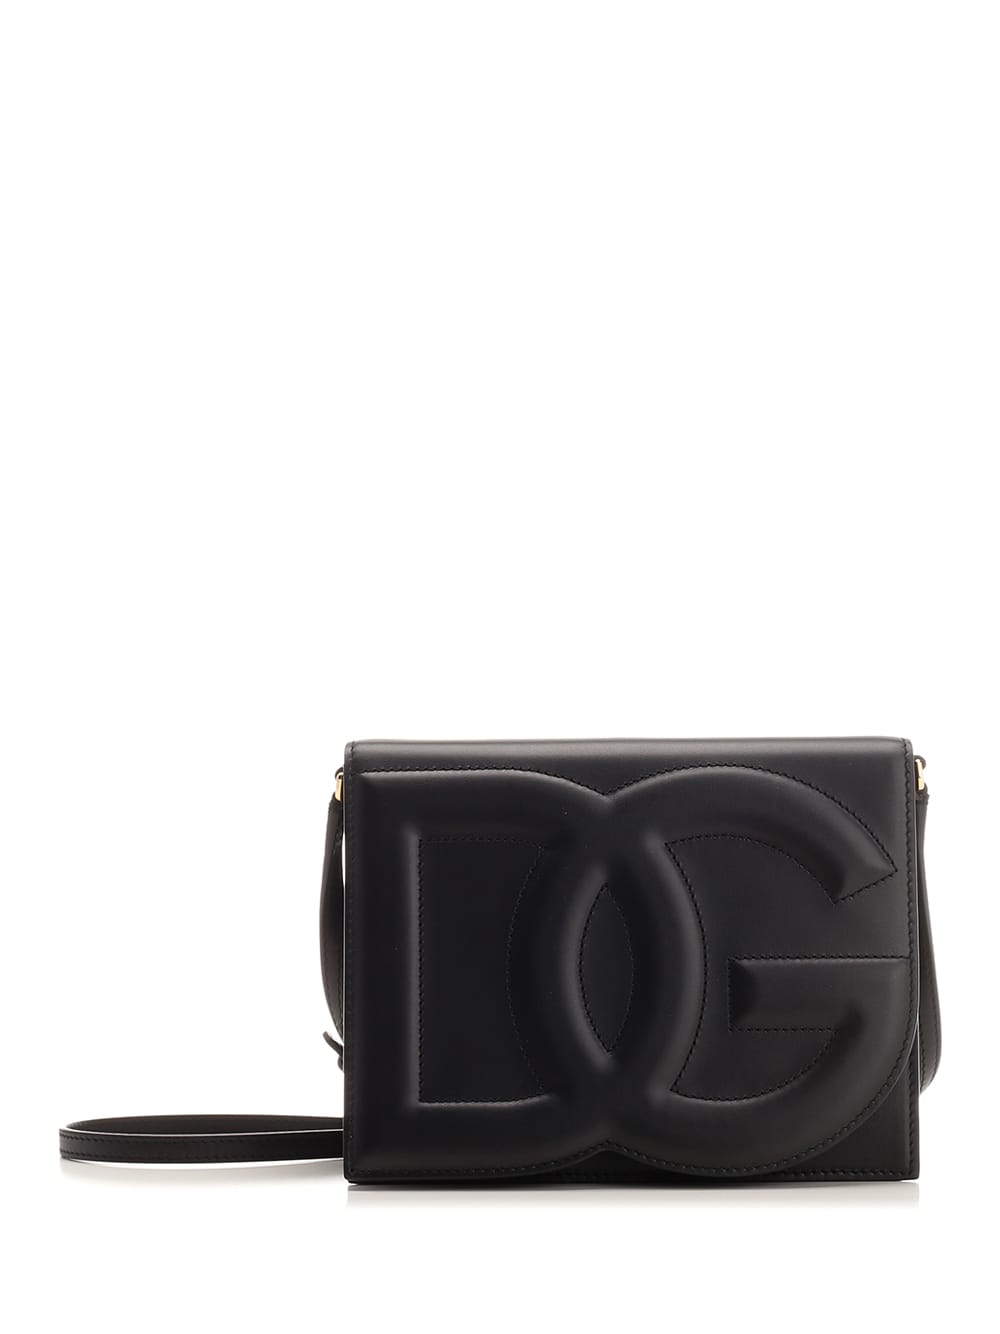 Dolce & Gabbana Dg Cross-body Bag In Black